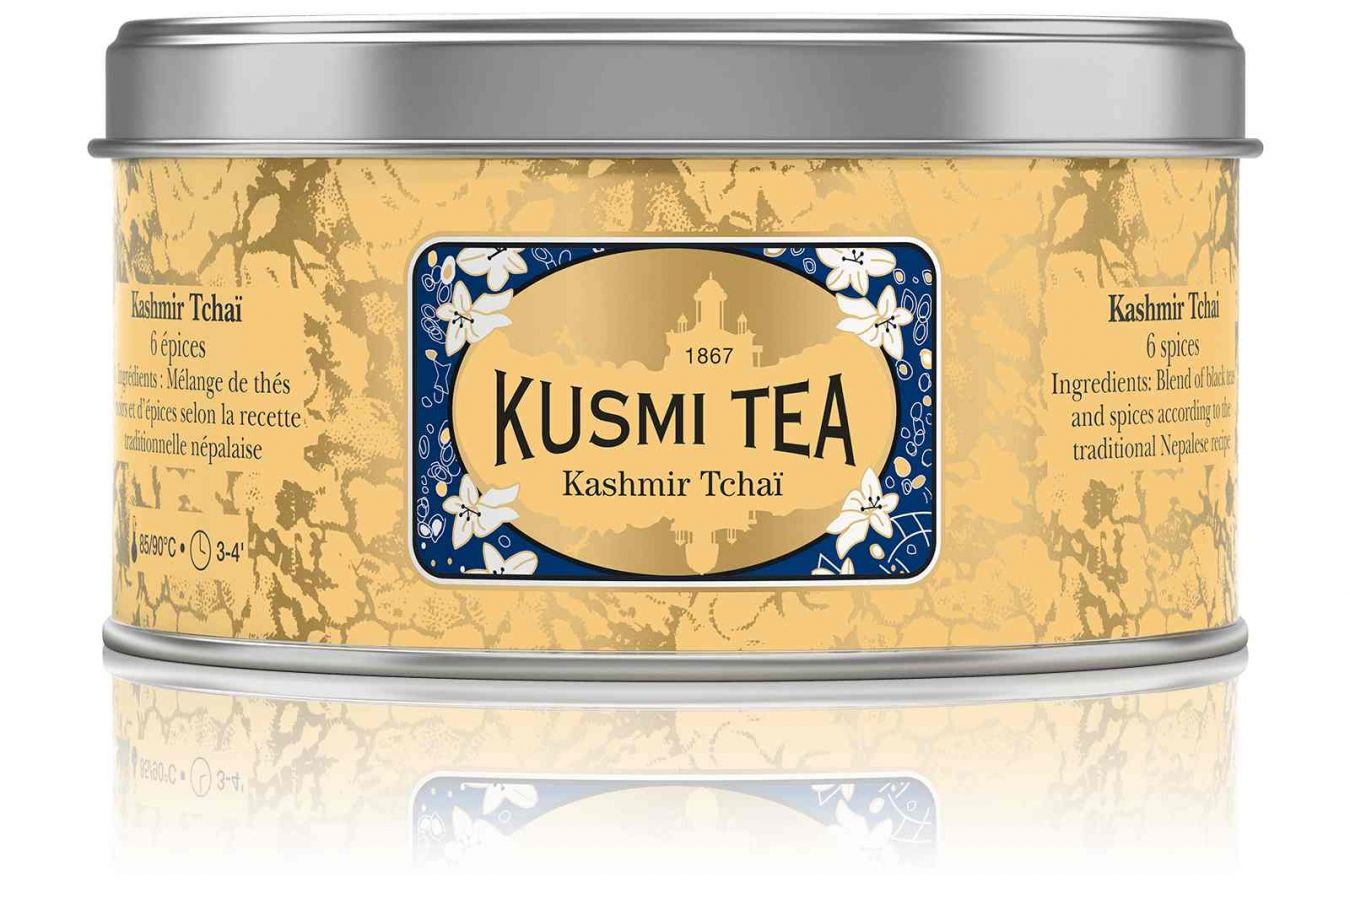 Čaj od Kusmi Tea podle tajné nepálské receptury má blahodárné účinky